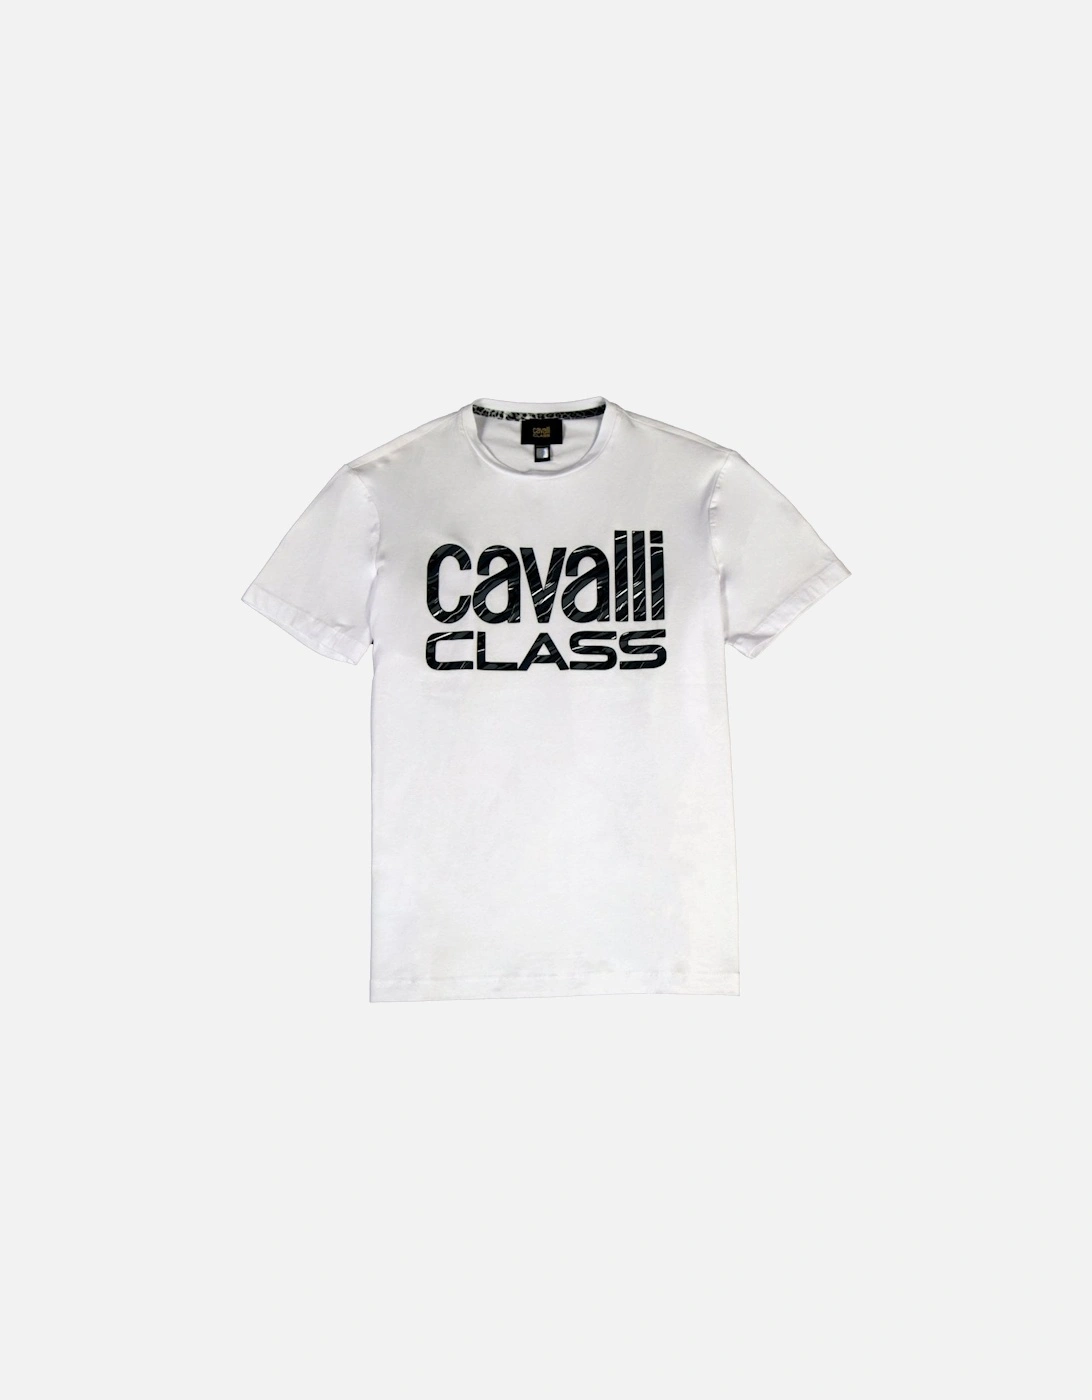 Cavalli Class T-shirt White, 2 of 1